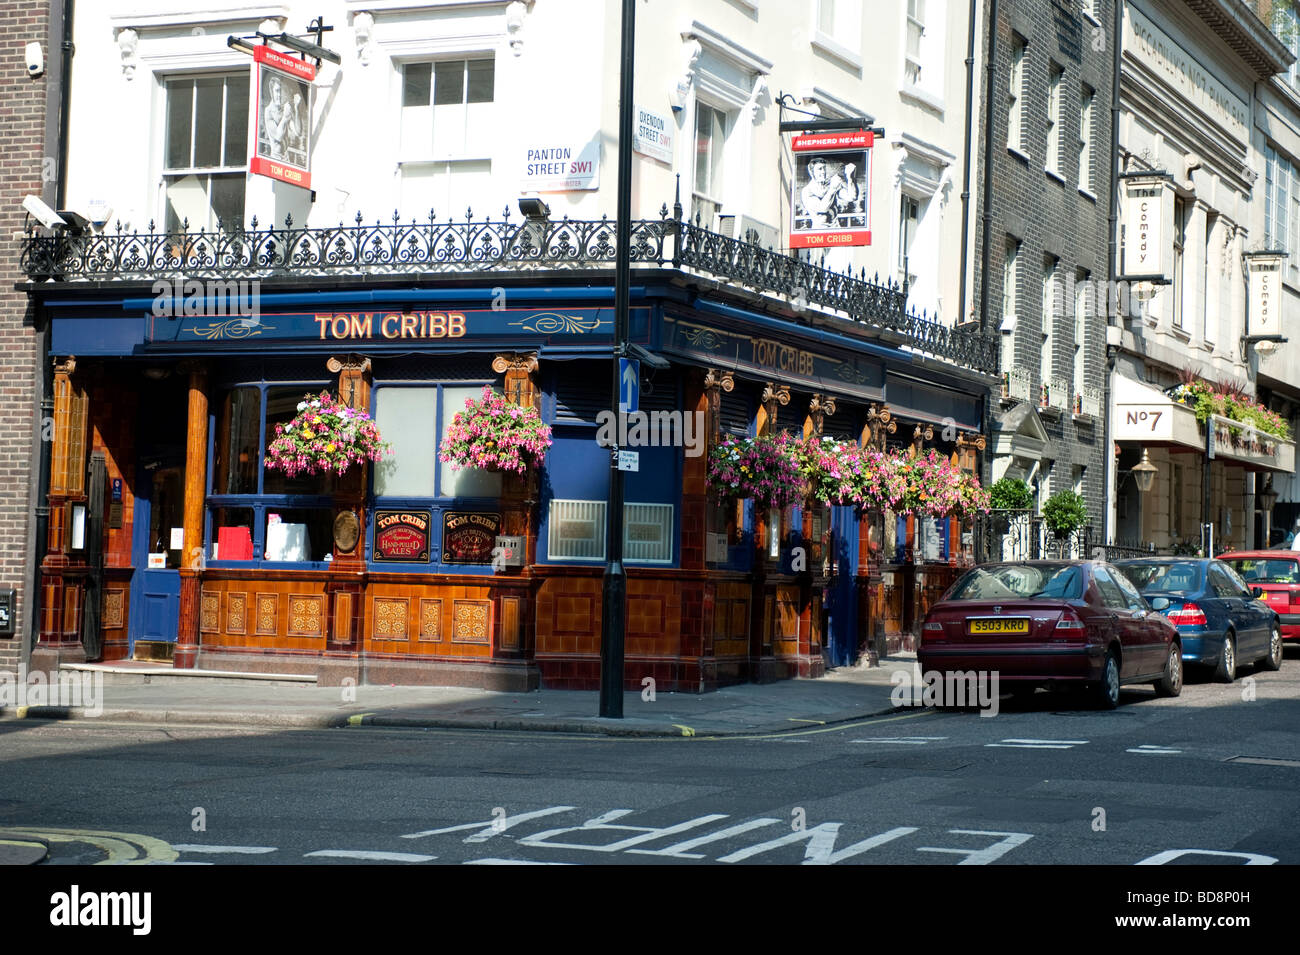 The Tom Cribb Pub in London. Stock Photo